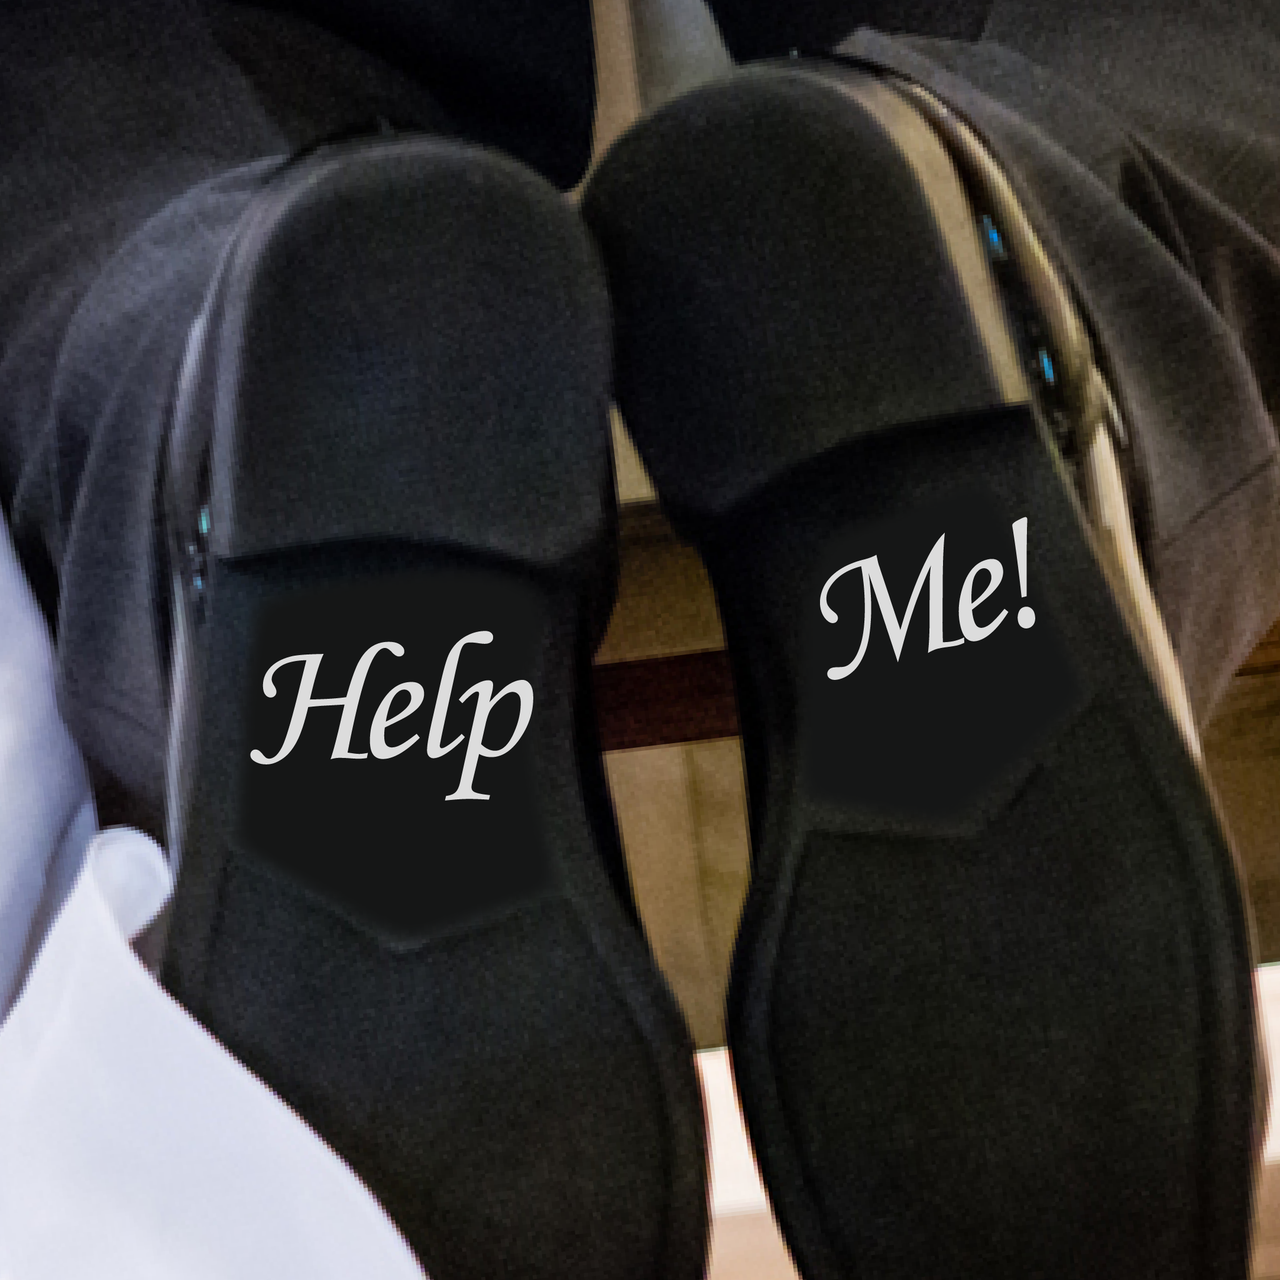 Help Me! Wedding Shoe Decals